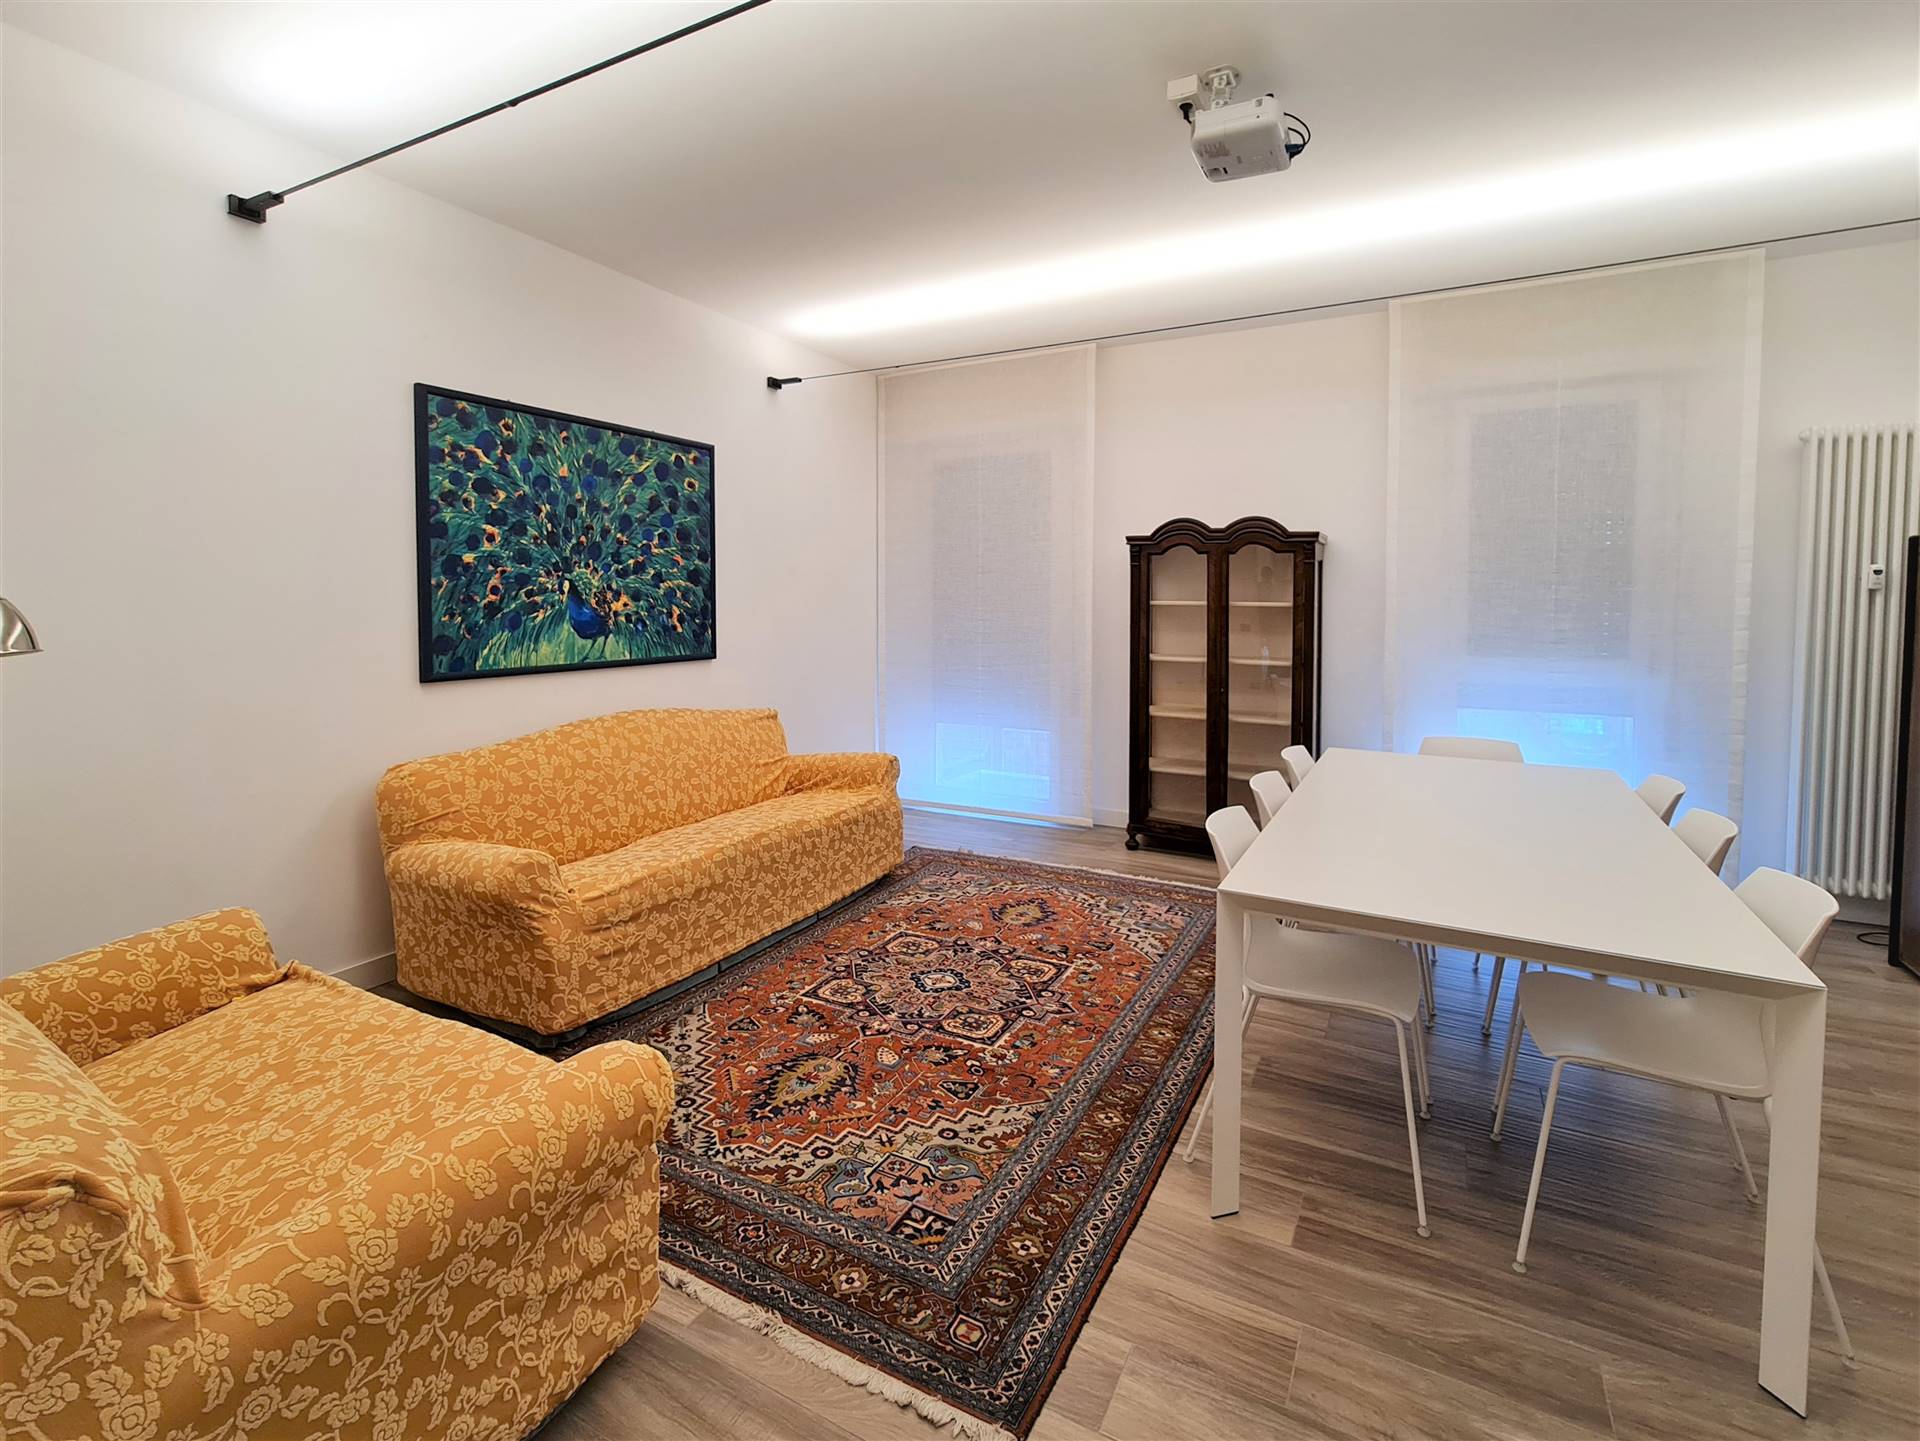 Affittiamo signorile appartamento a Treviso centro storico zona Borgo Cavour. L'appartamento è completamente ammobiliato ed è composto da ingresso, 